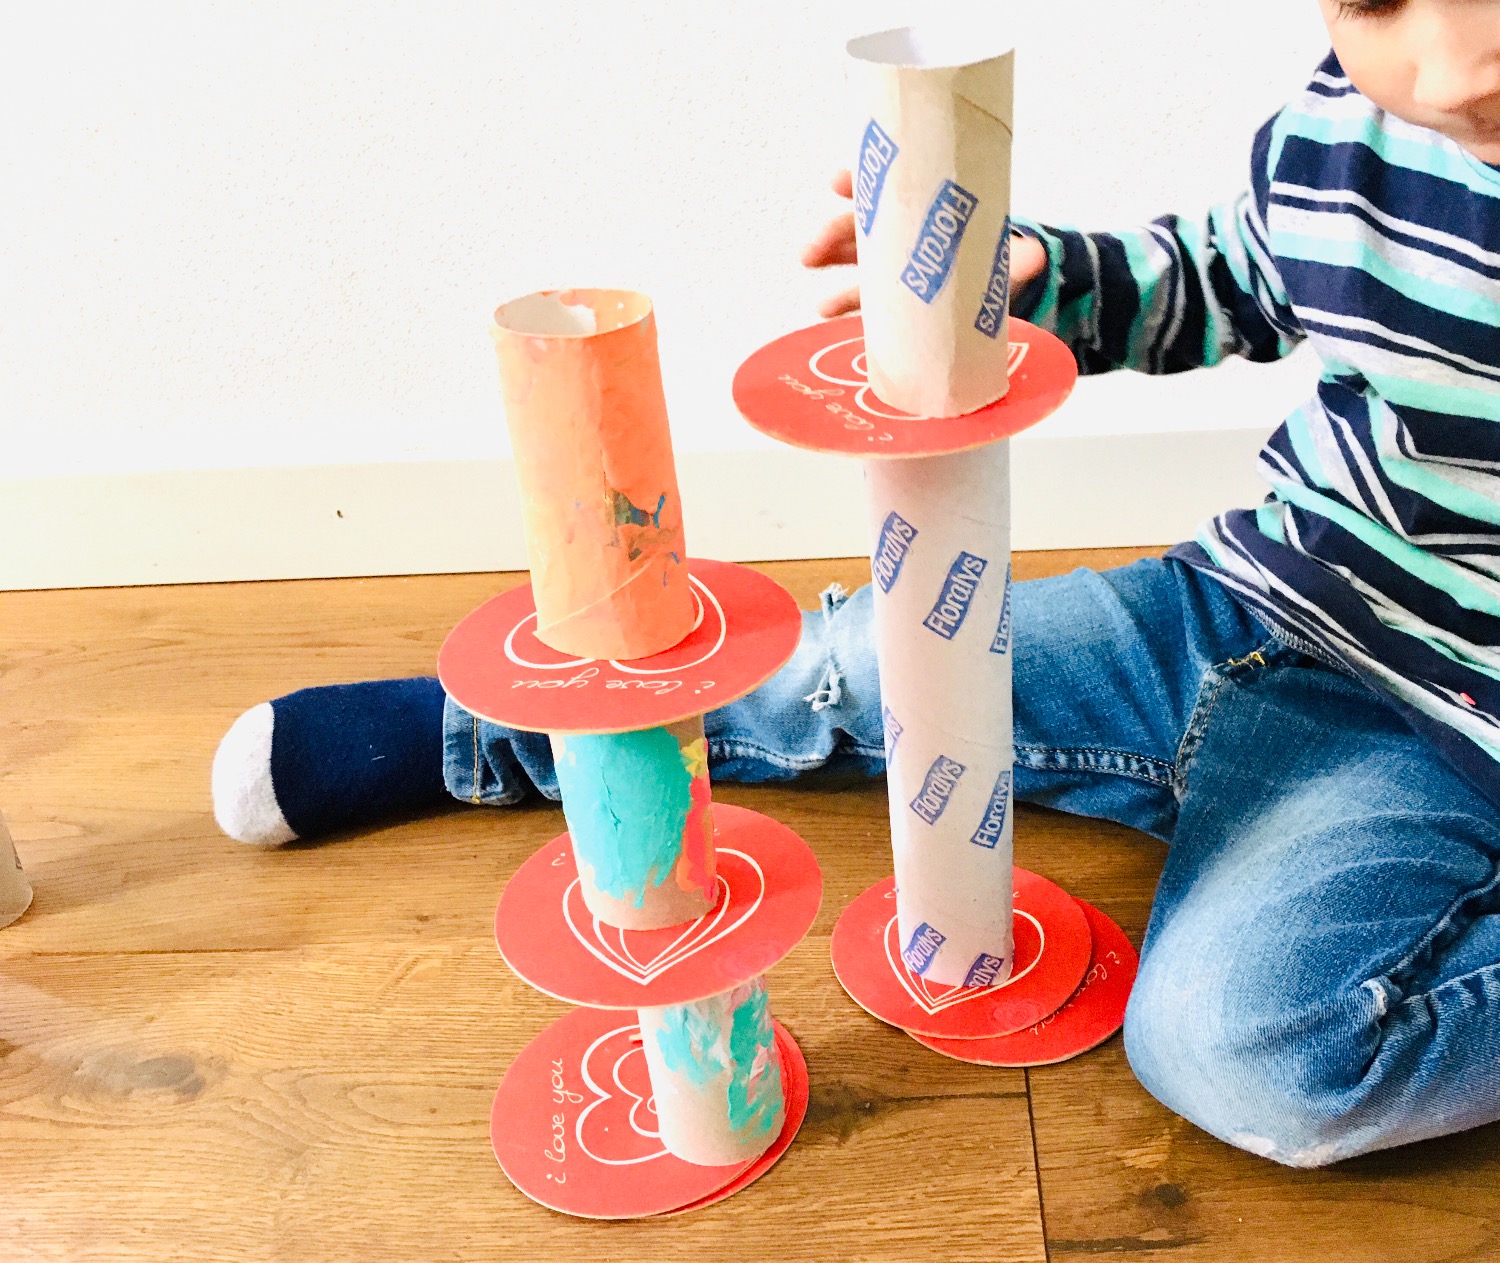 Titelbild zur Idee für die Beschäftigung mit Kindern '(255) 8 Spielideen mit Papprollen'